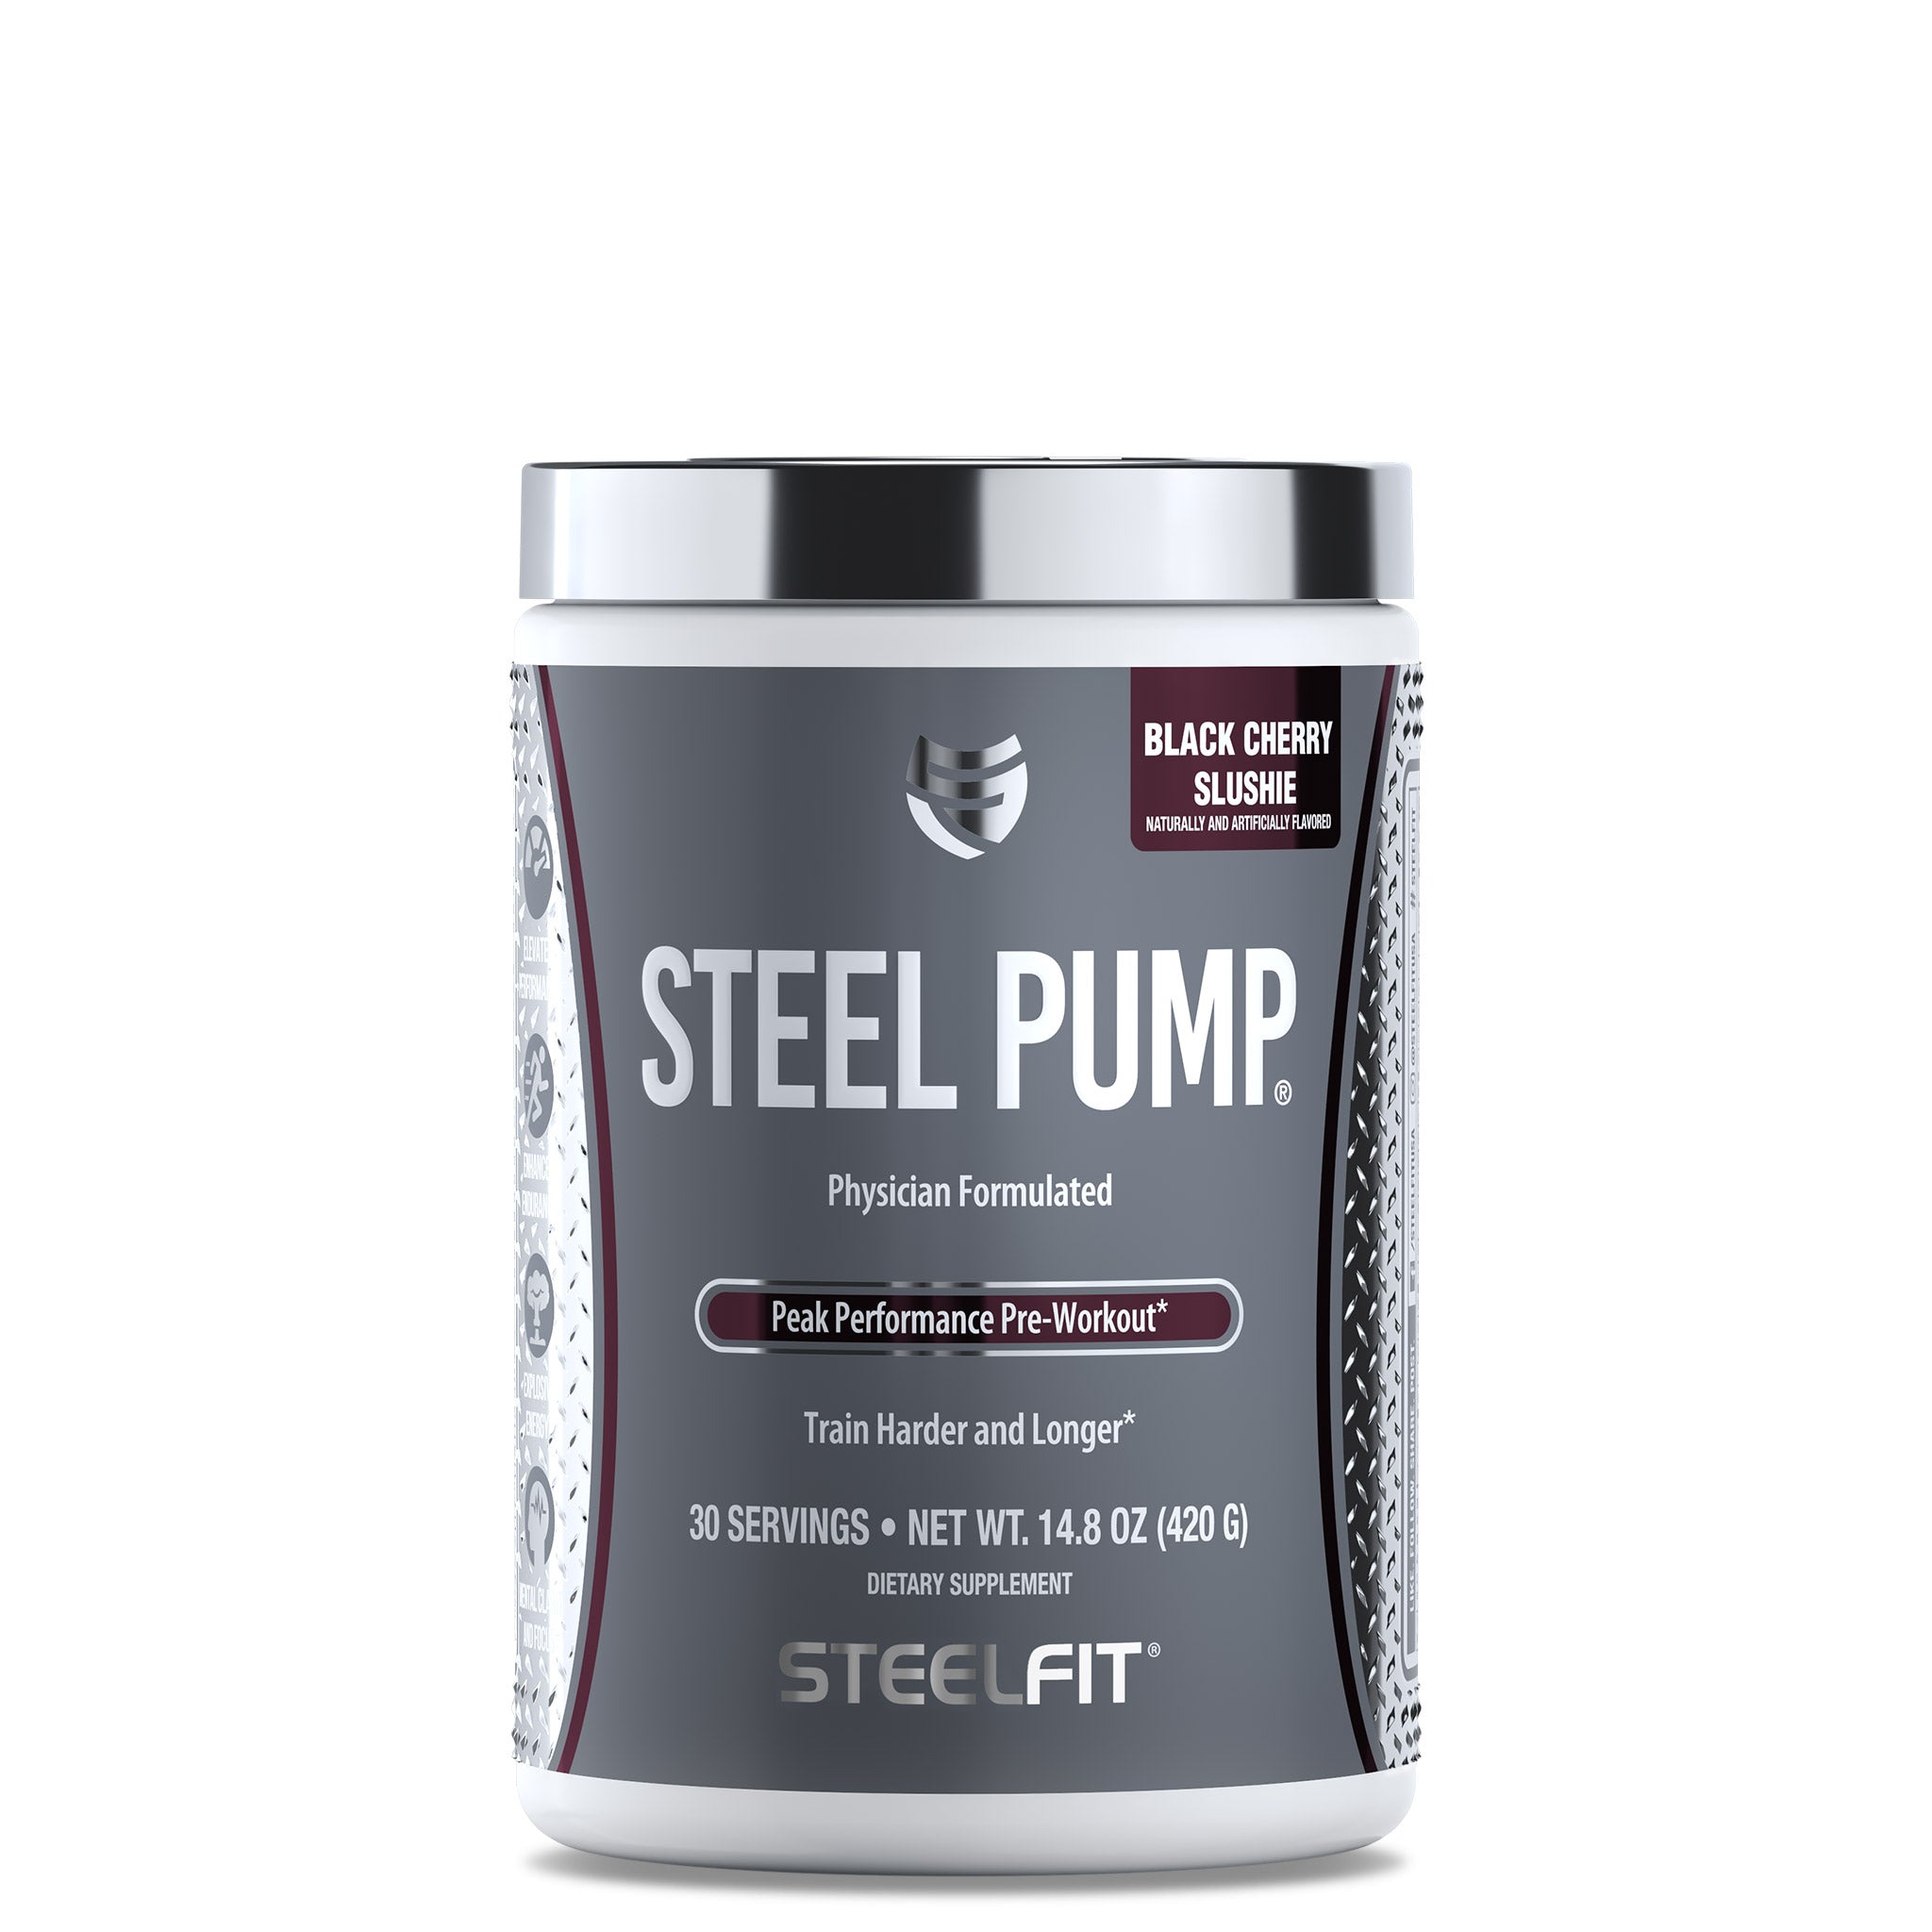 Black Cherry Slushie pump pre workout supplement by SteelFit